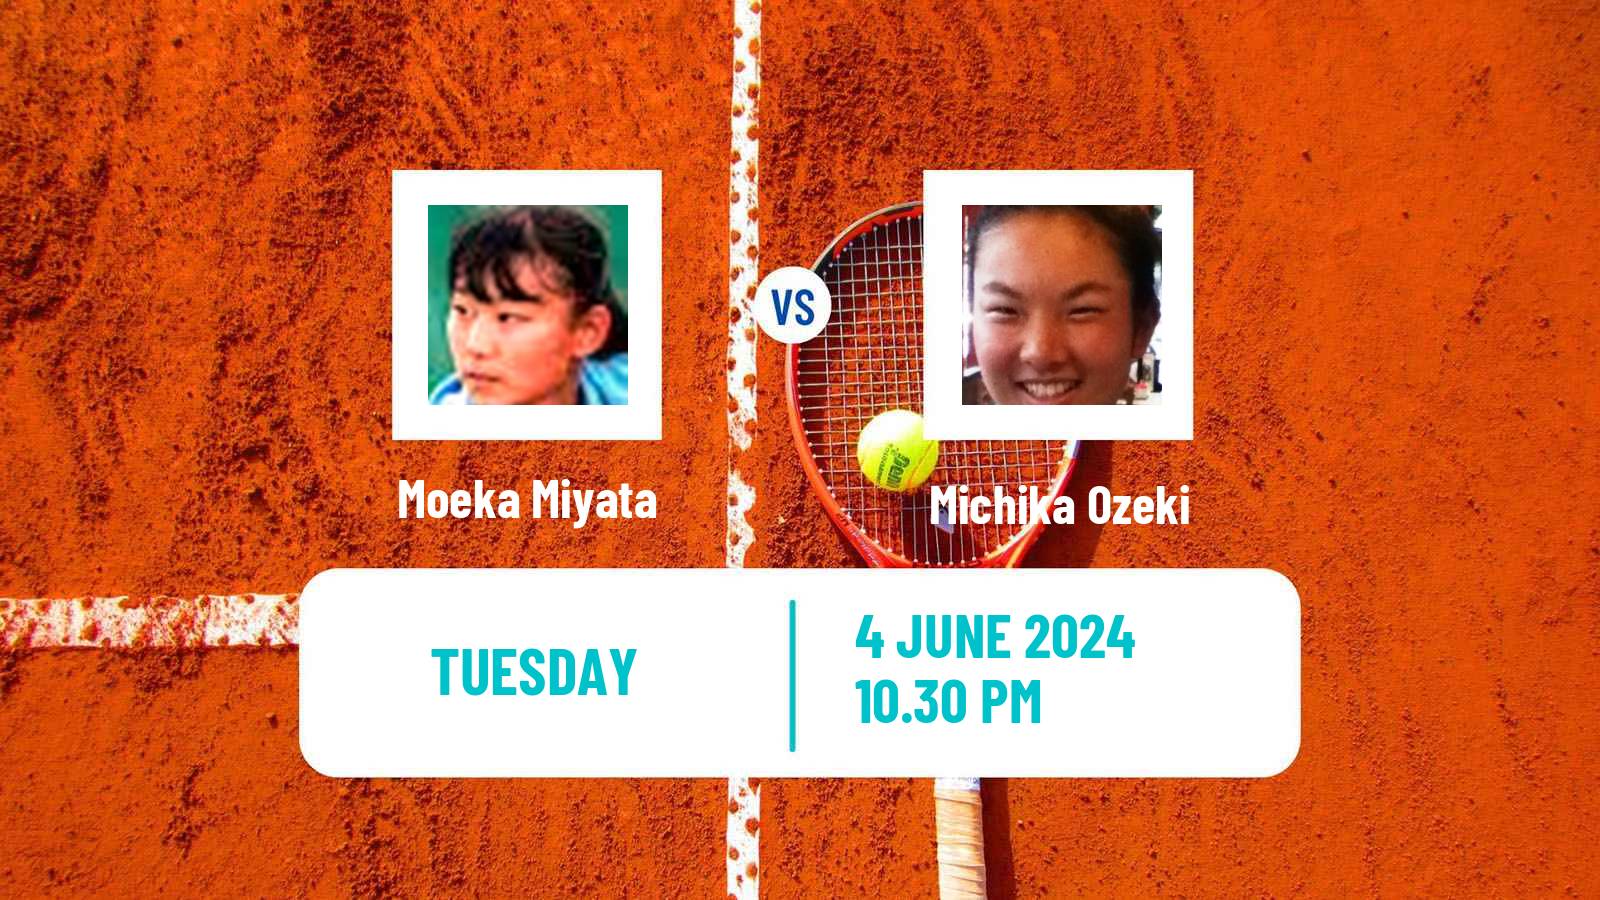 Tennis ITF W15 Kawaguchi Women Moeka Miyata - Michika Ozeki